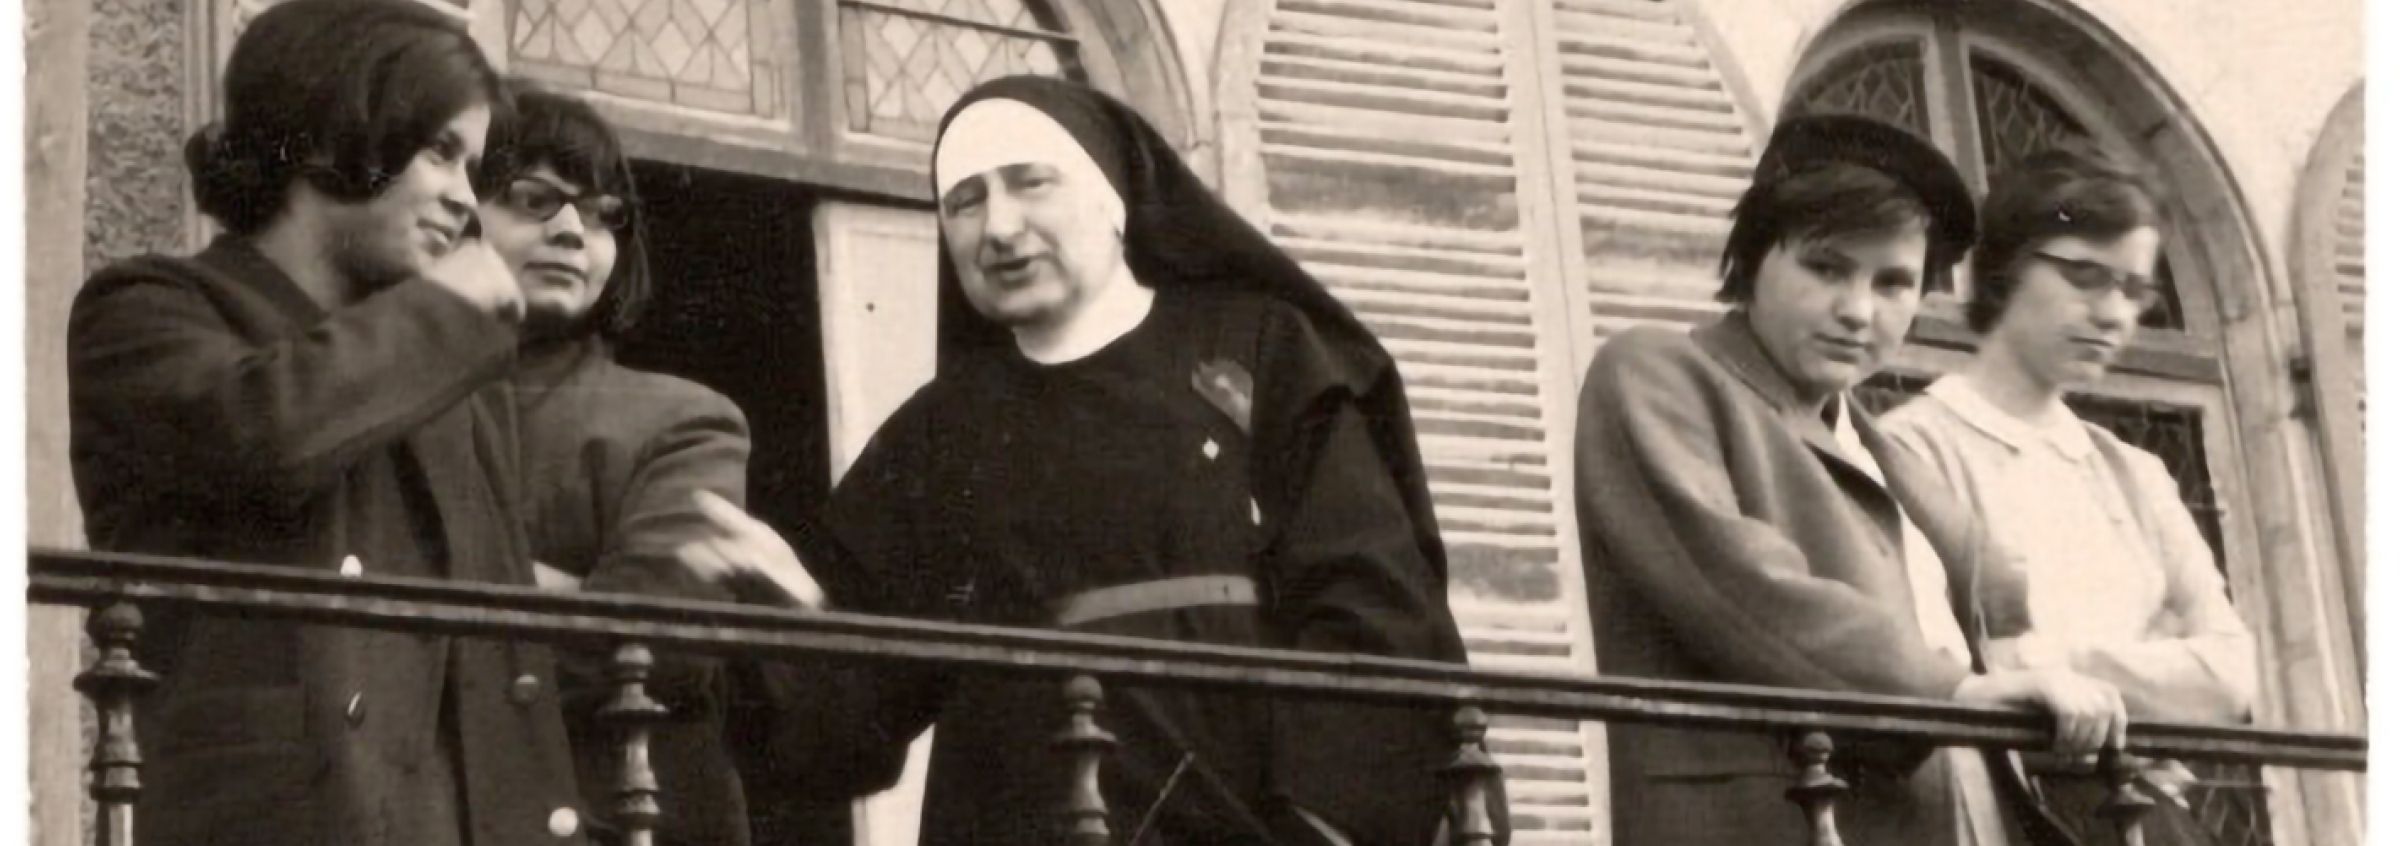 Historische Aufnahmen vom Balkon von Kloster Wald, Schwestern und Schülerinnen